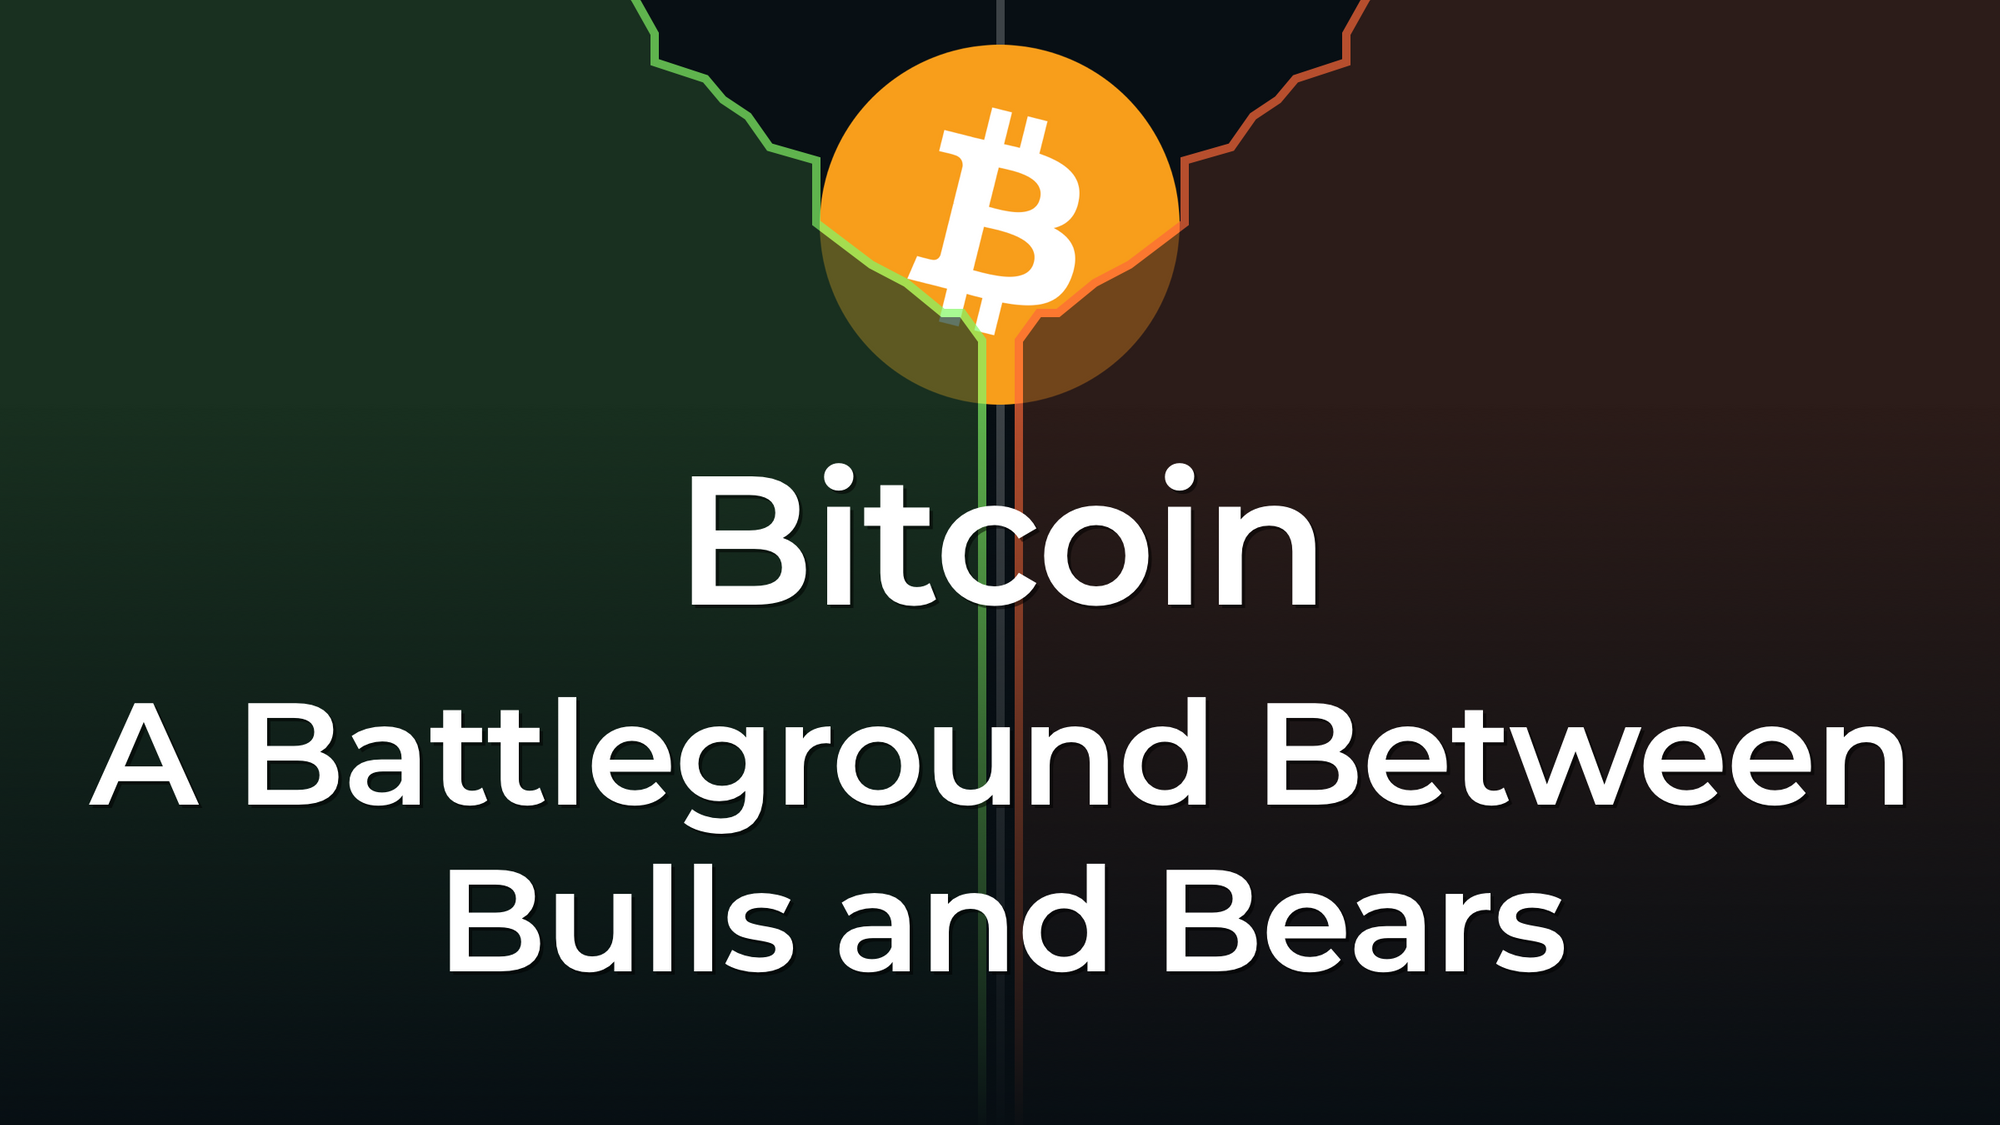 Bitcoin: A Battleground Between Bulls and Bears